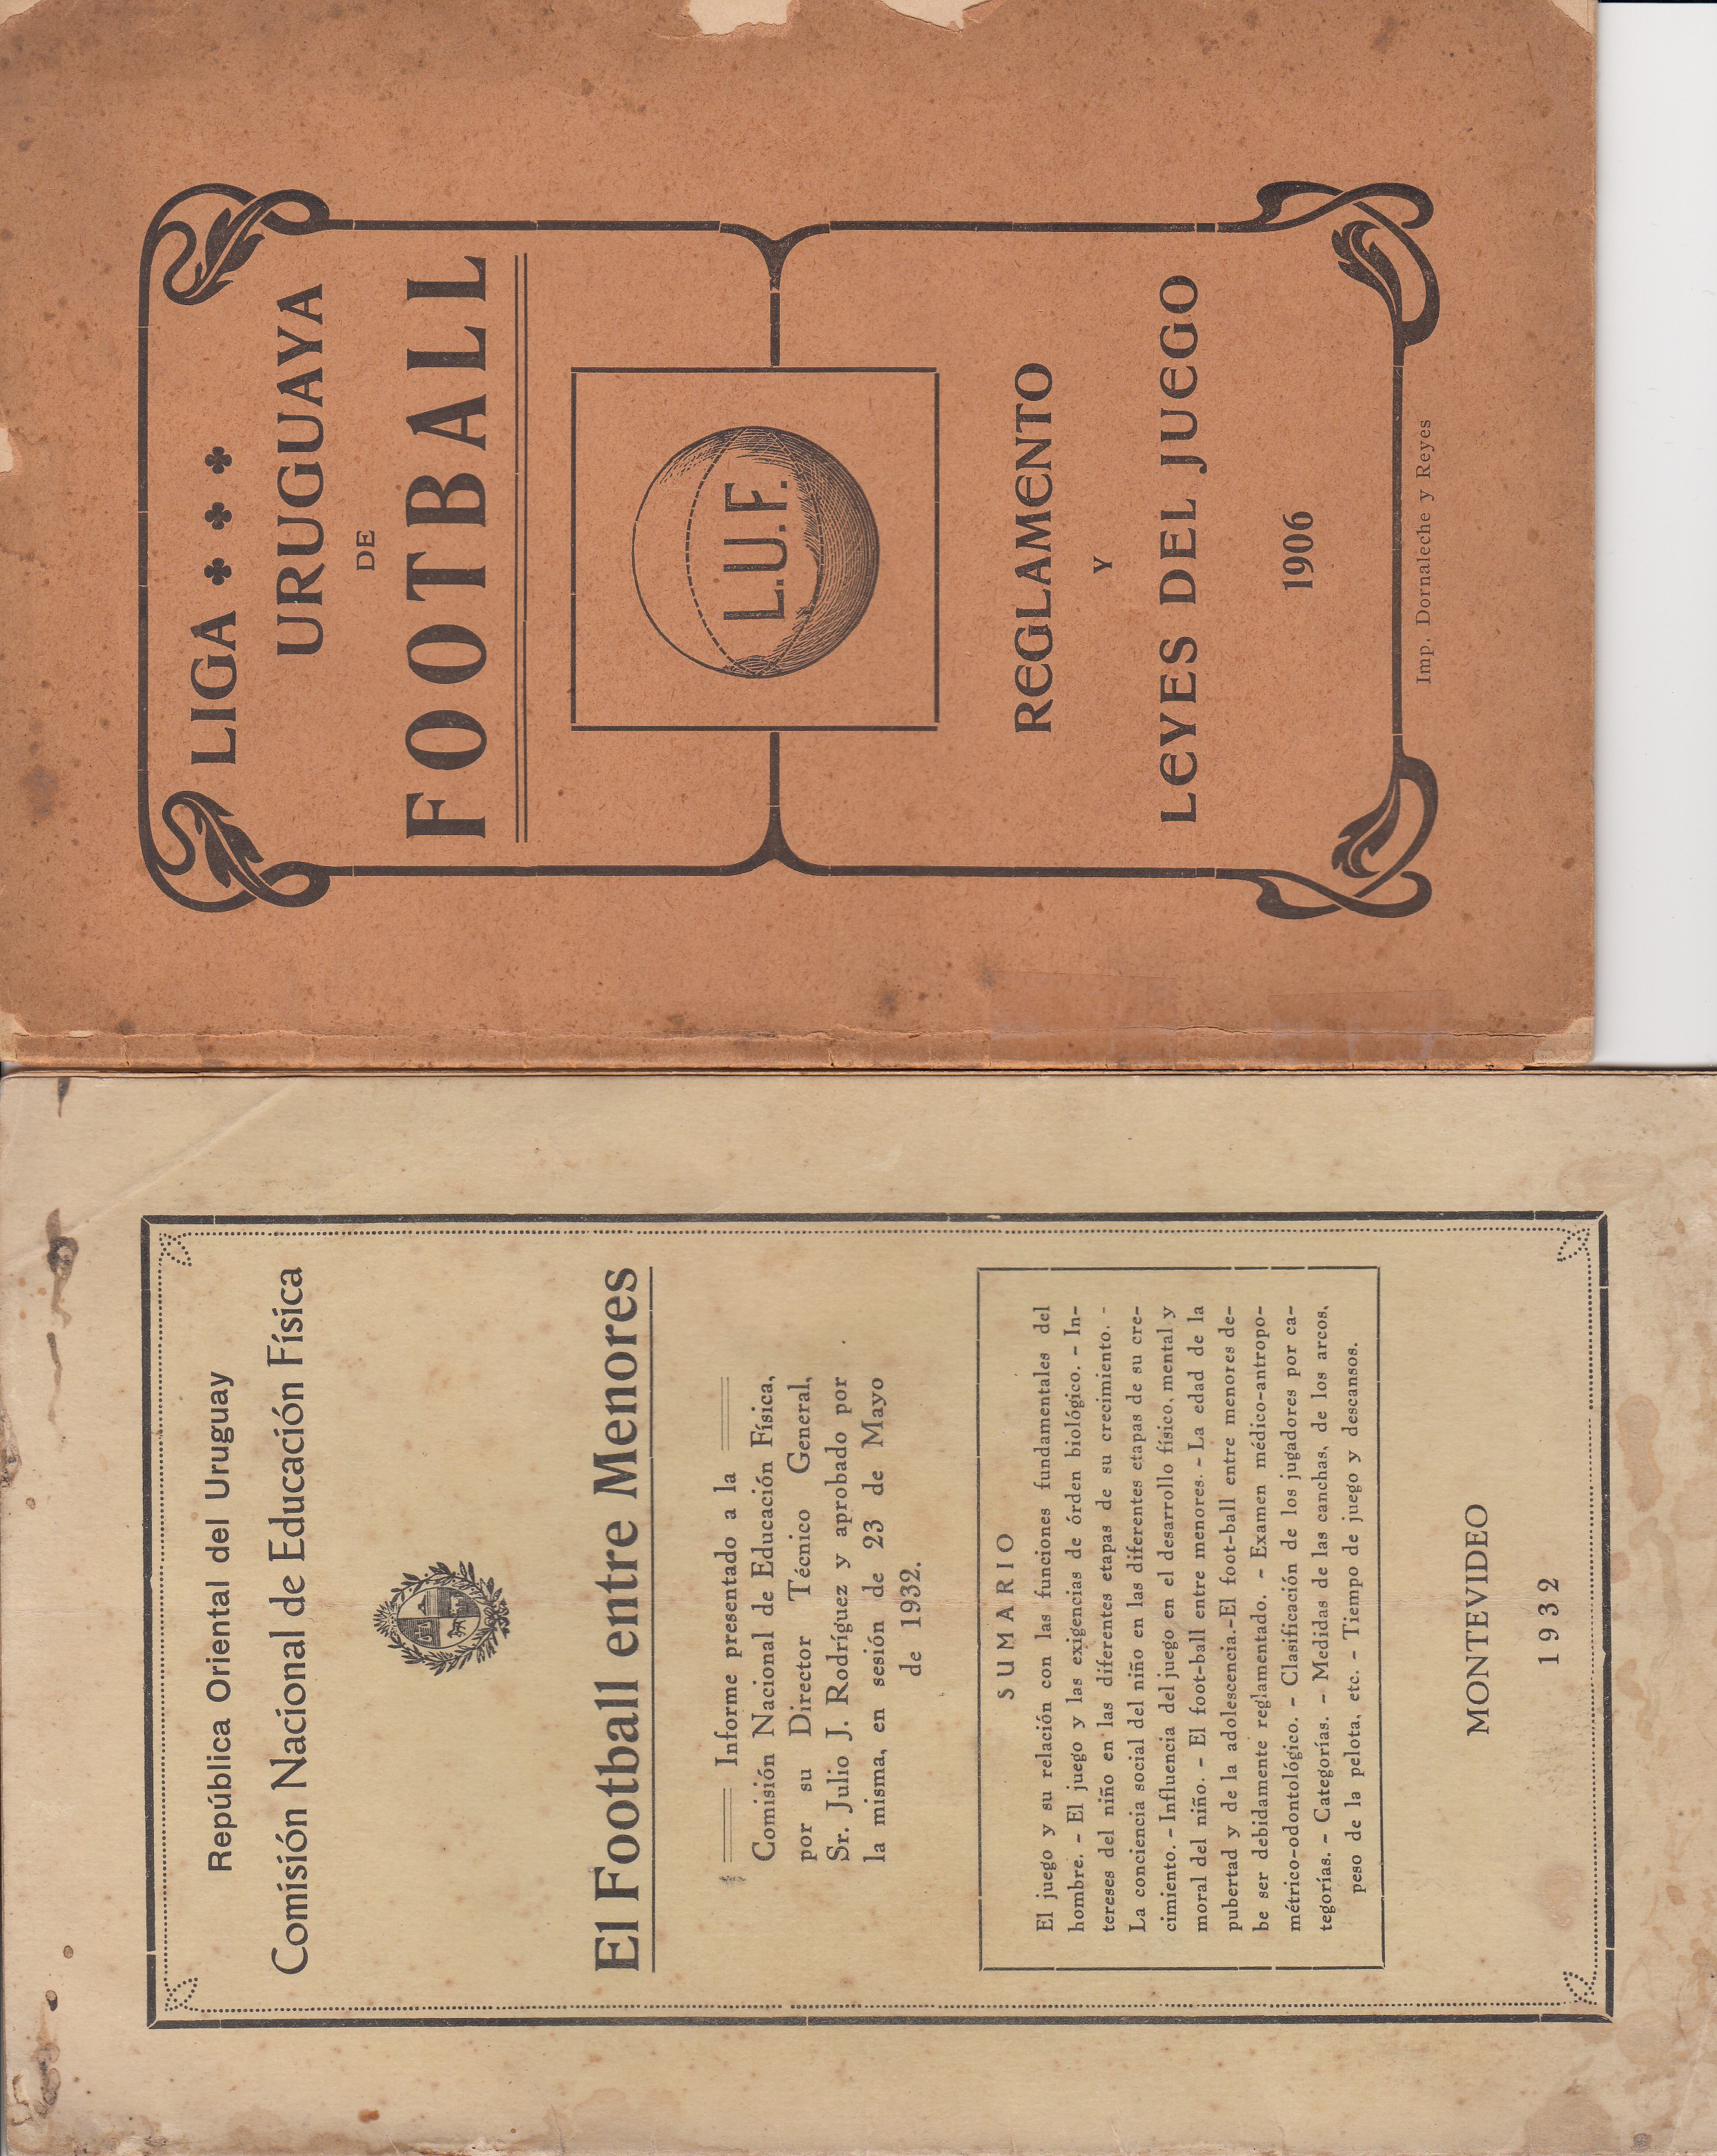 URUGUAY FOOTBALL 1906 Scarce booklet Liga Uruguaya de Football, Reglamento y Leyes del Juego 1906. - Image 2 of 2